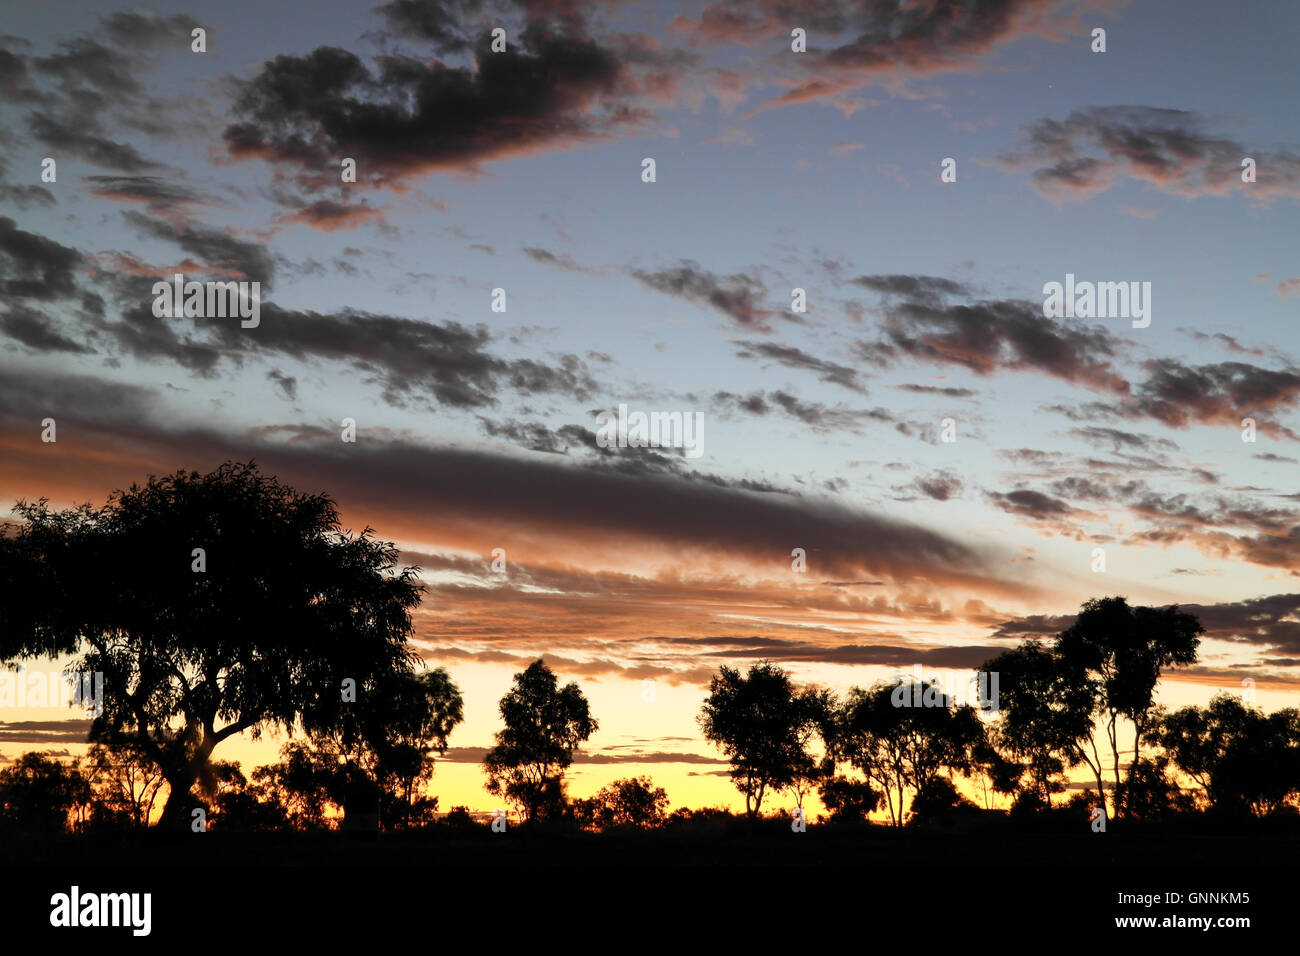 La silhouette des arbres dans l'Outback australien - Australie Banque D'Images